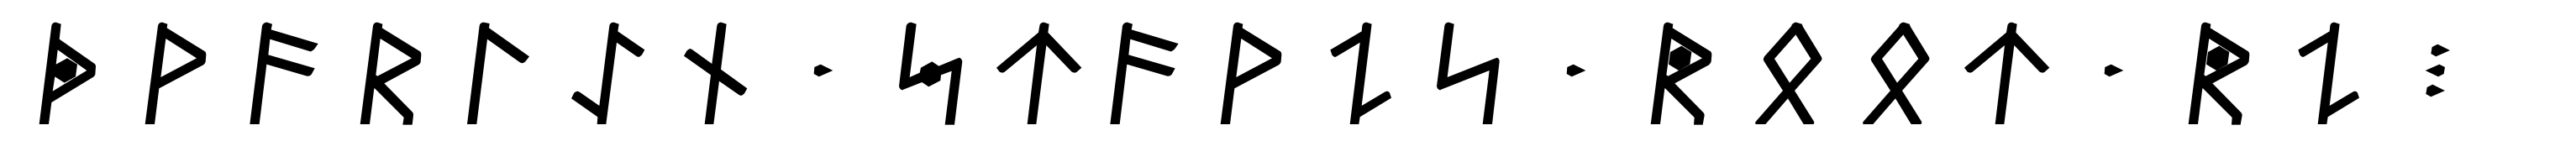 Dvarlin Staves Root Regular Italic